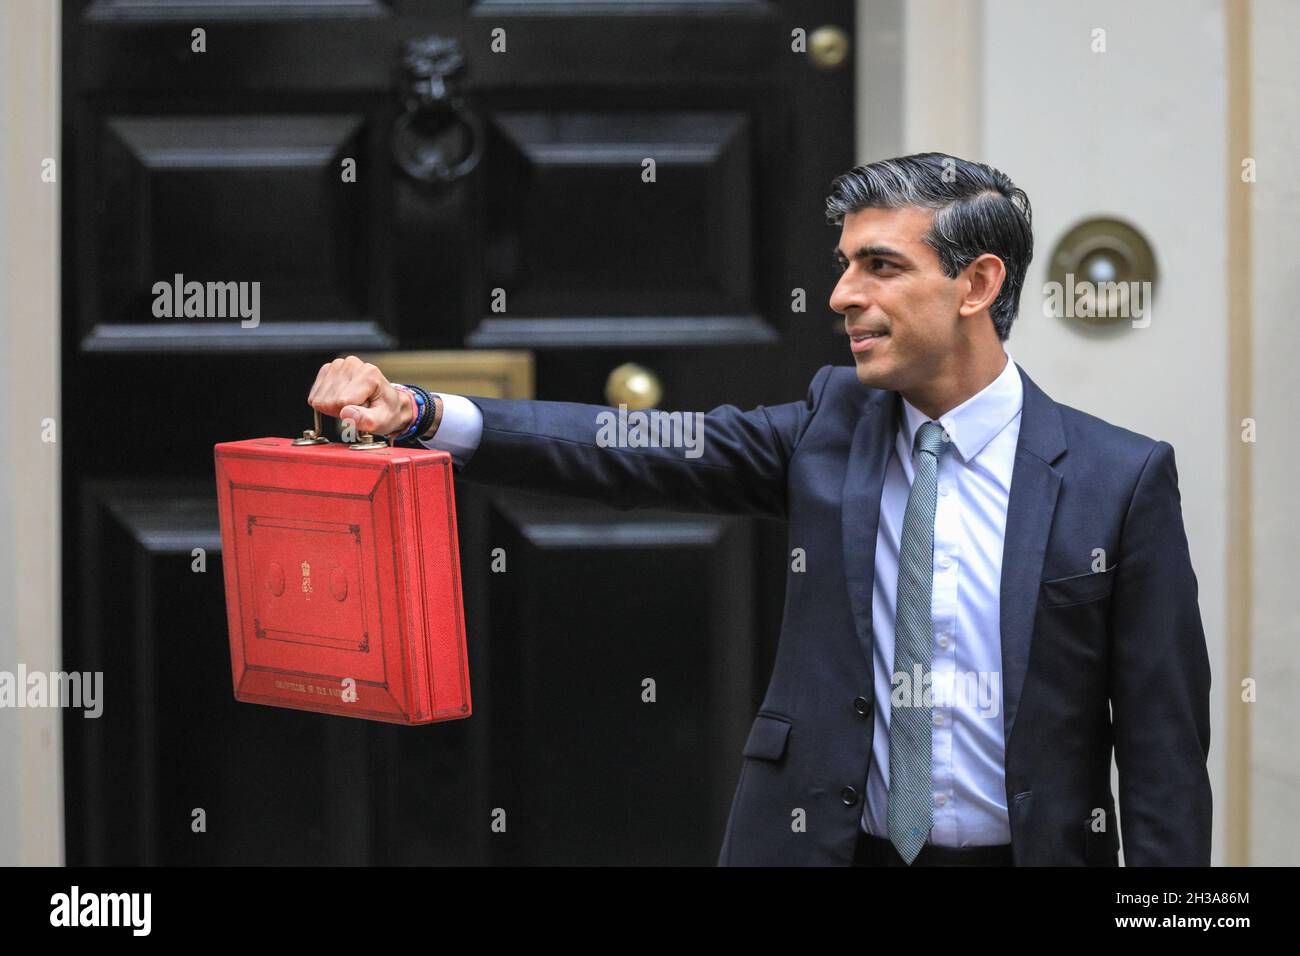 Westminster, Londres, Royaume-Uni, 27 octobre 2021.Rishi Sunak, chancelier de l’Échiquier, pose devant le 11 Downing Street avec l’emblématique encadré rouge le jour du budget.Credit: Imagetraceur/Alamy Live News Banque D'Images